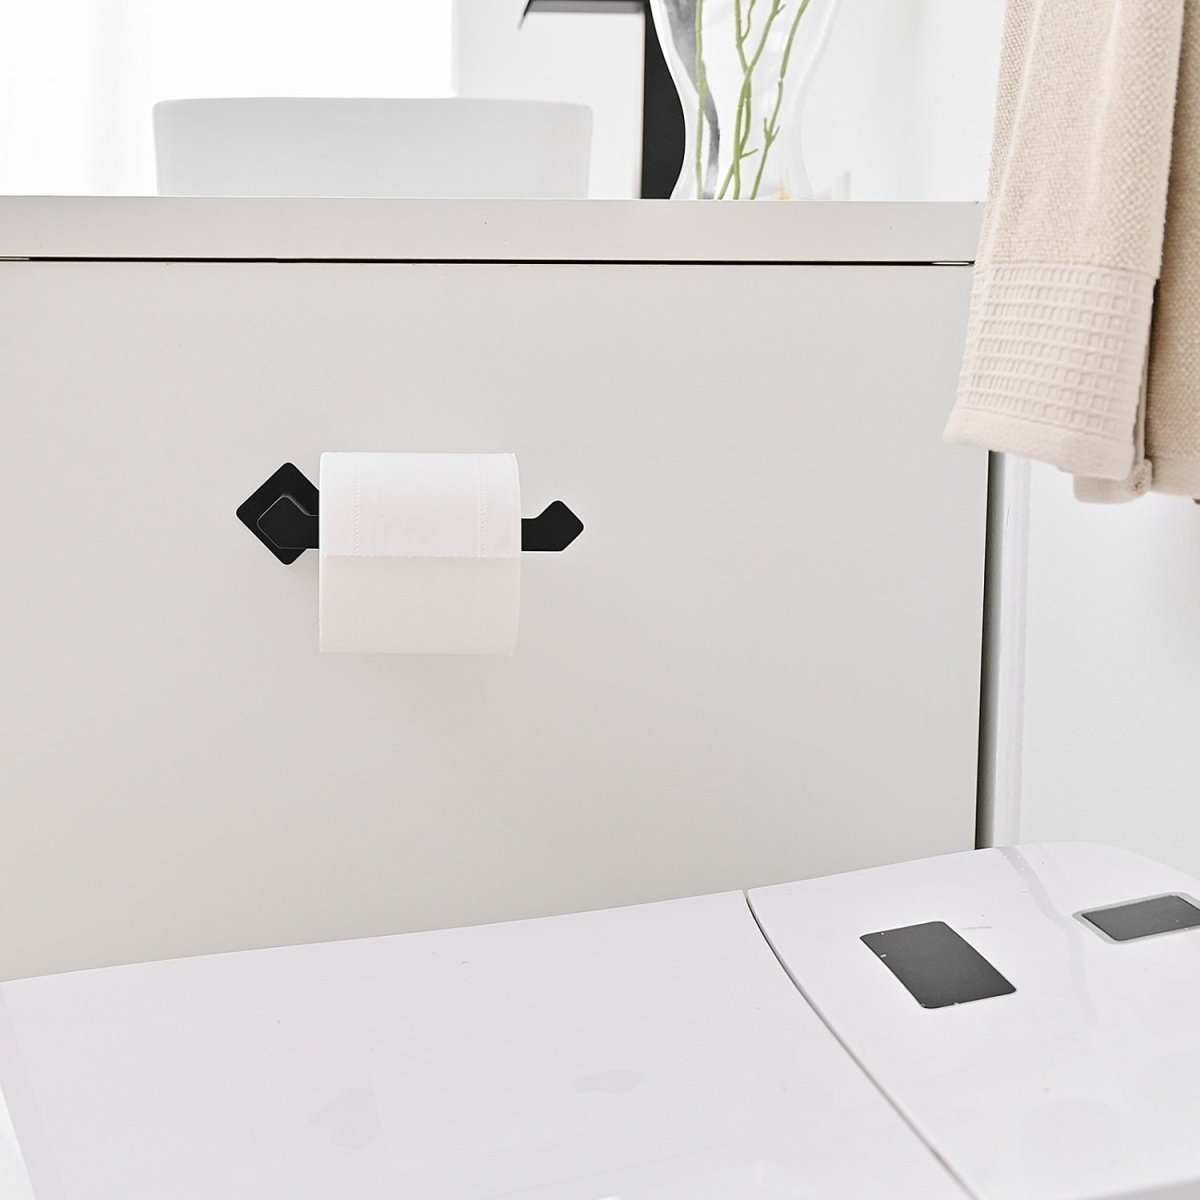 4 PCS Paper Holder Towel Hook Towel Bar Bath Set Matte Black - buyfaucet.com